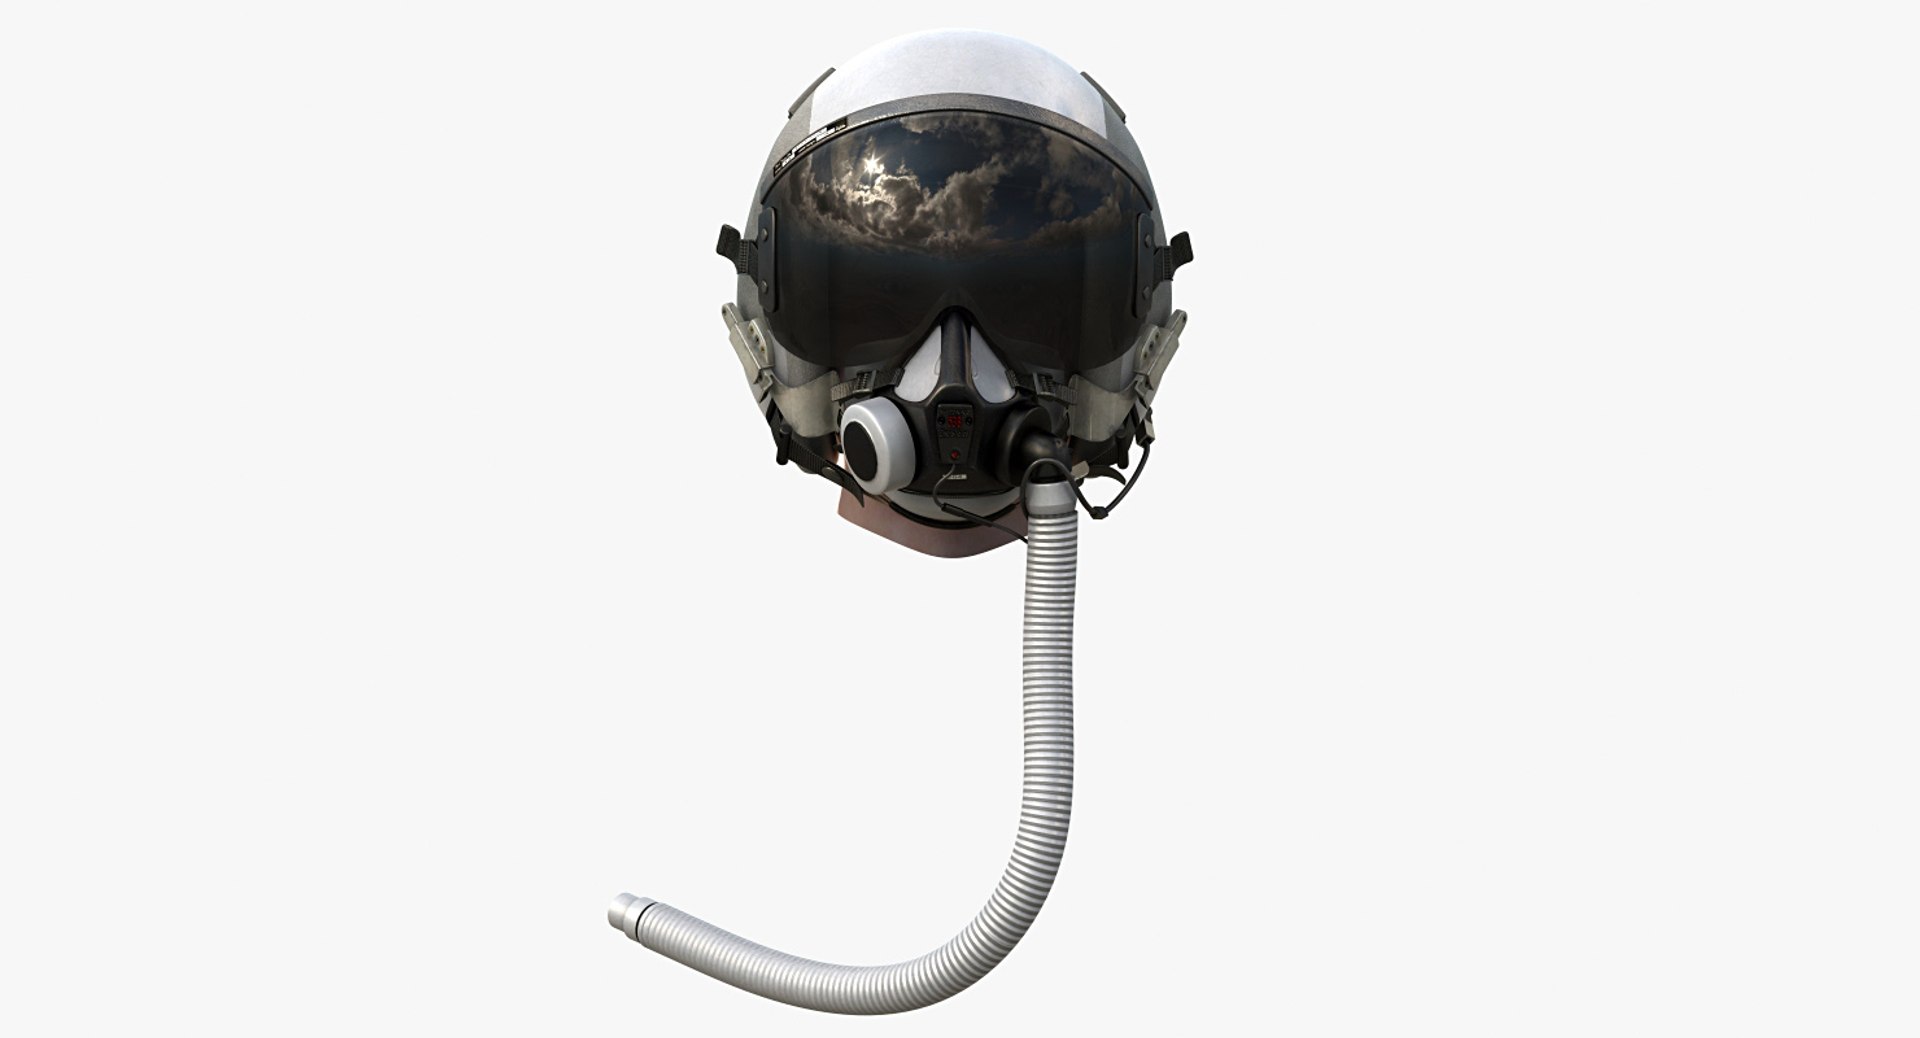 usaf fighter pilot helmet